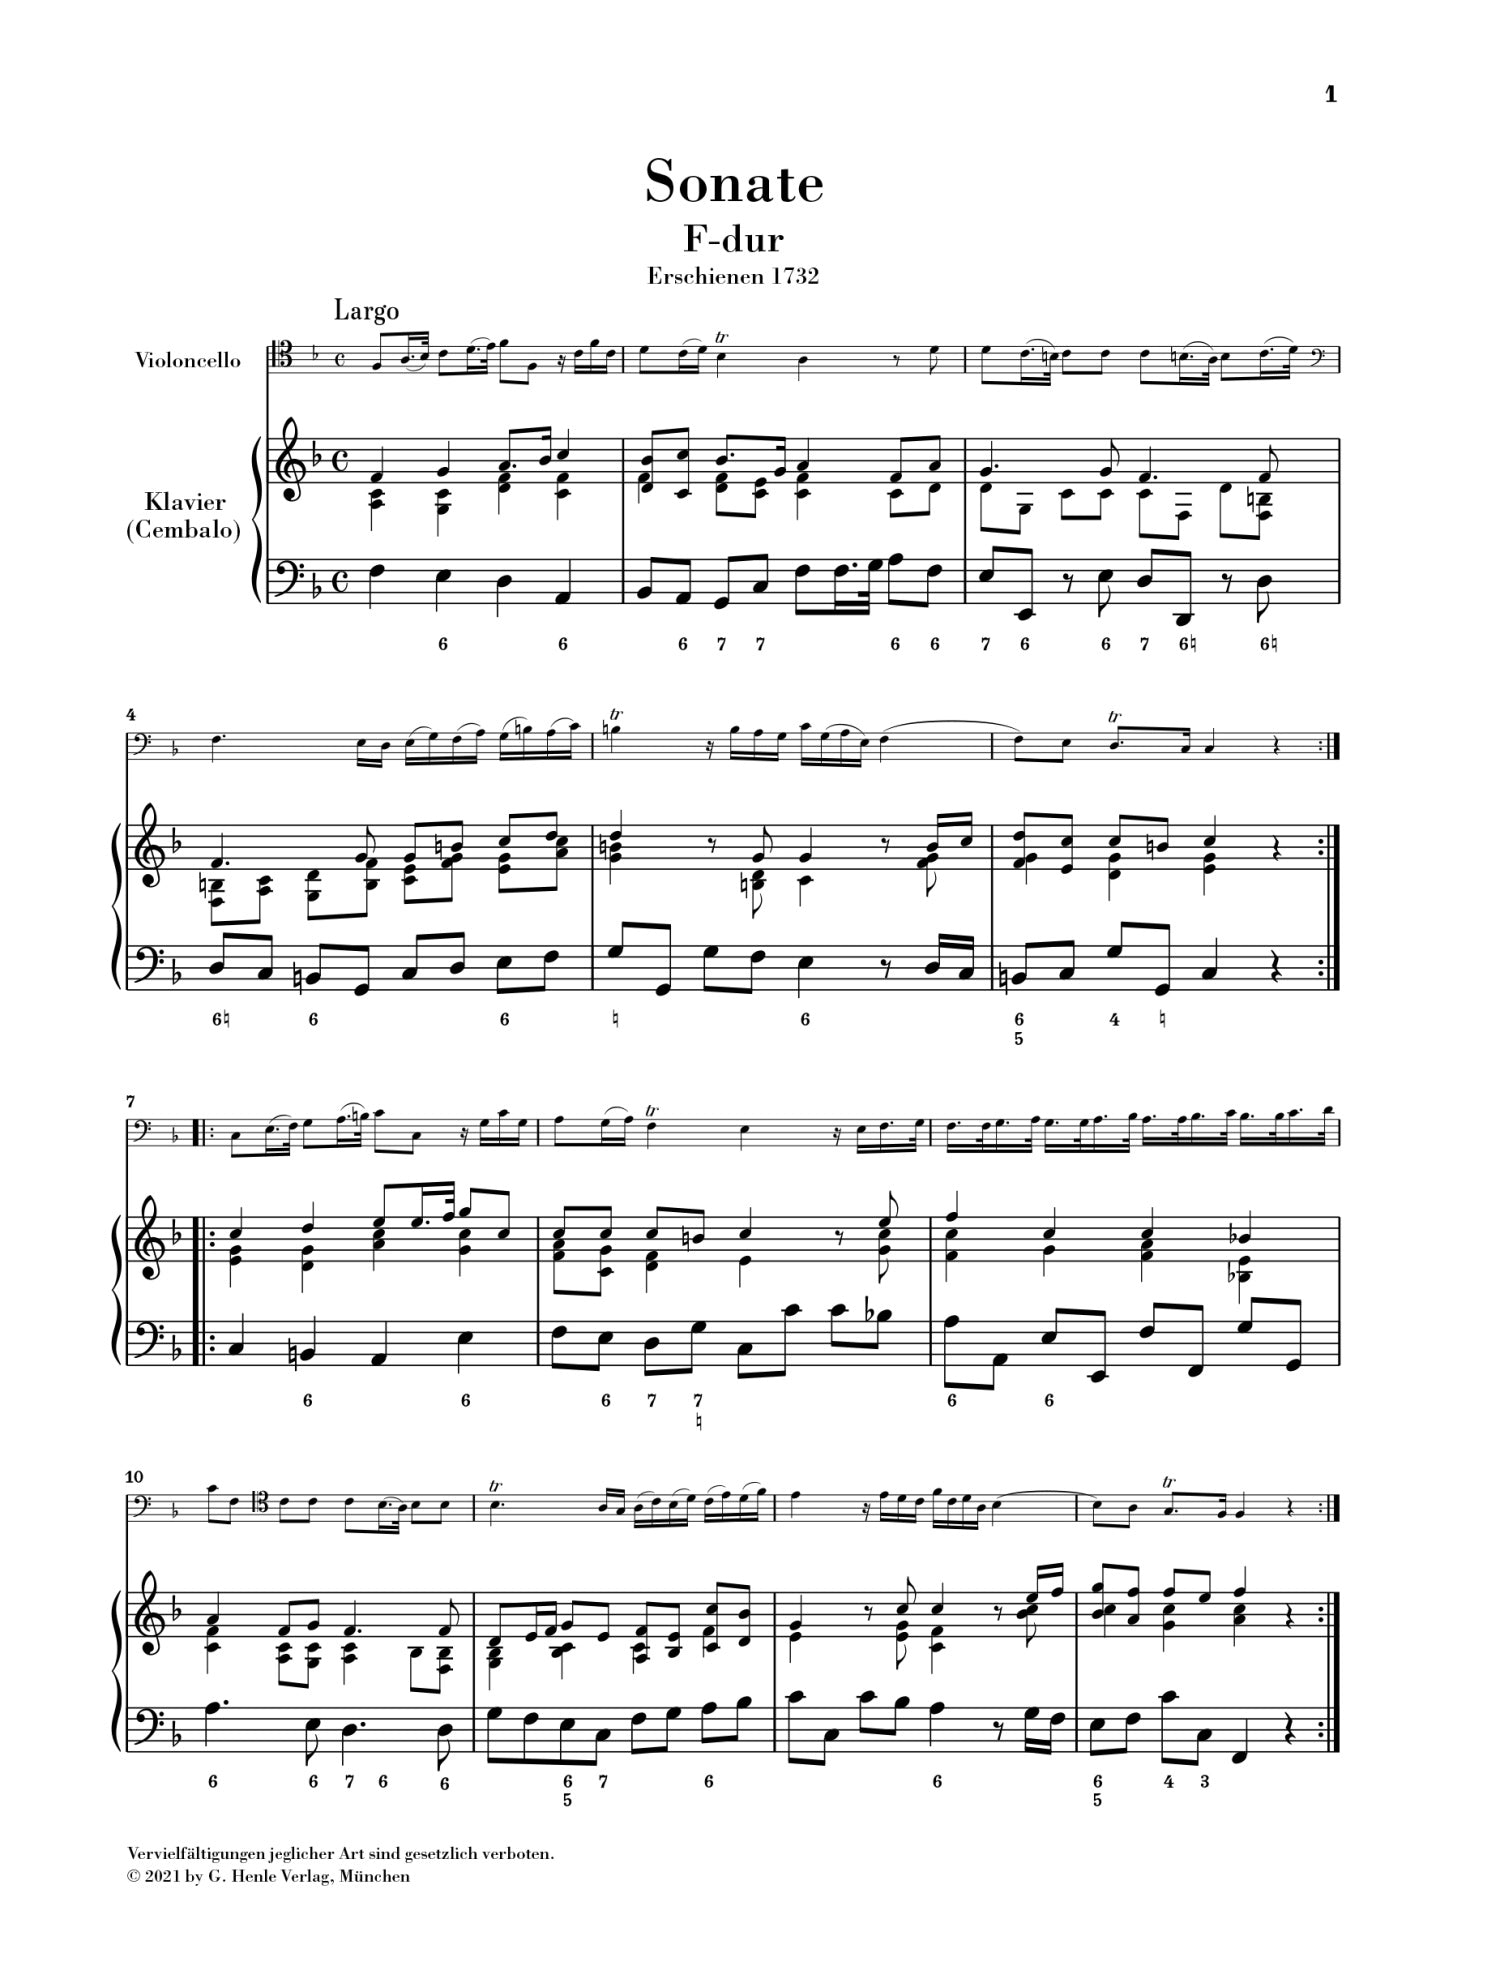 Marcello: Sonata no. 1 F major for Violoncello and Basso continuo